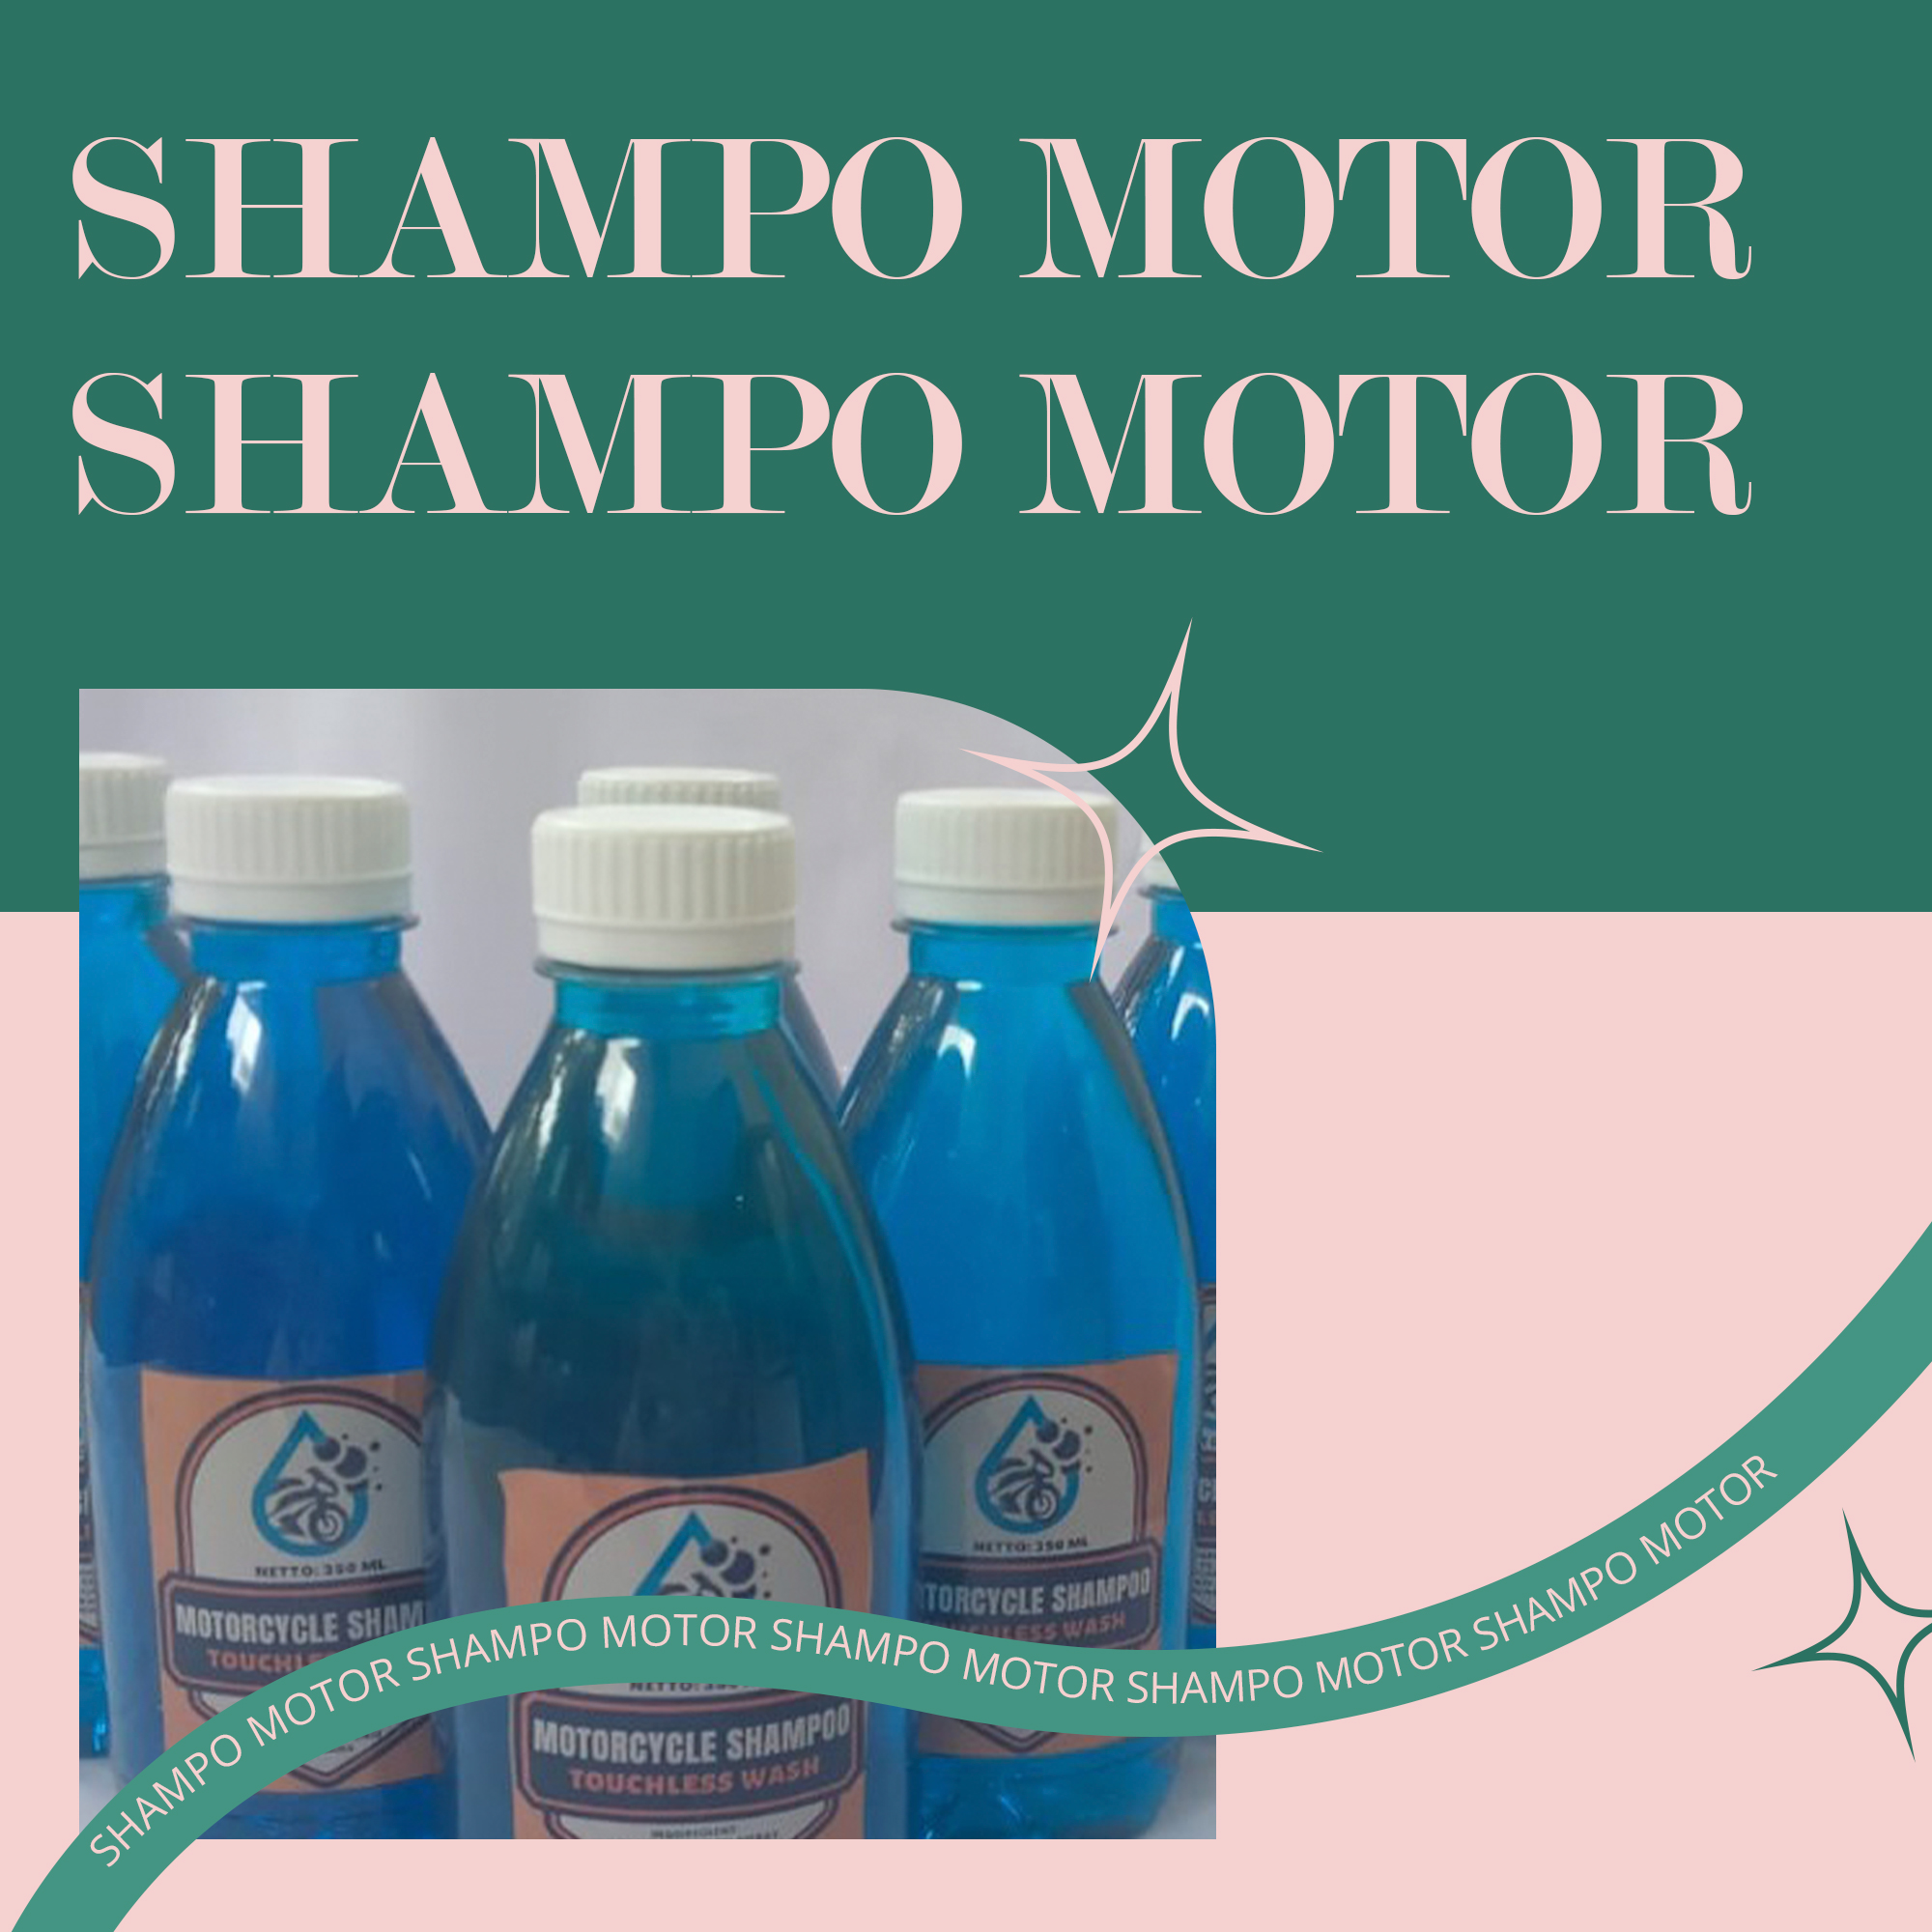 Shampo Motor